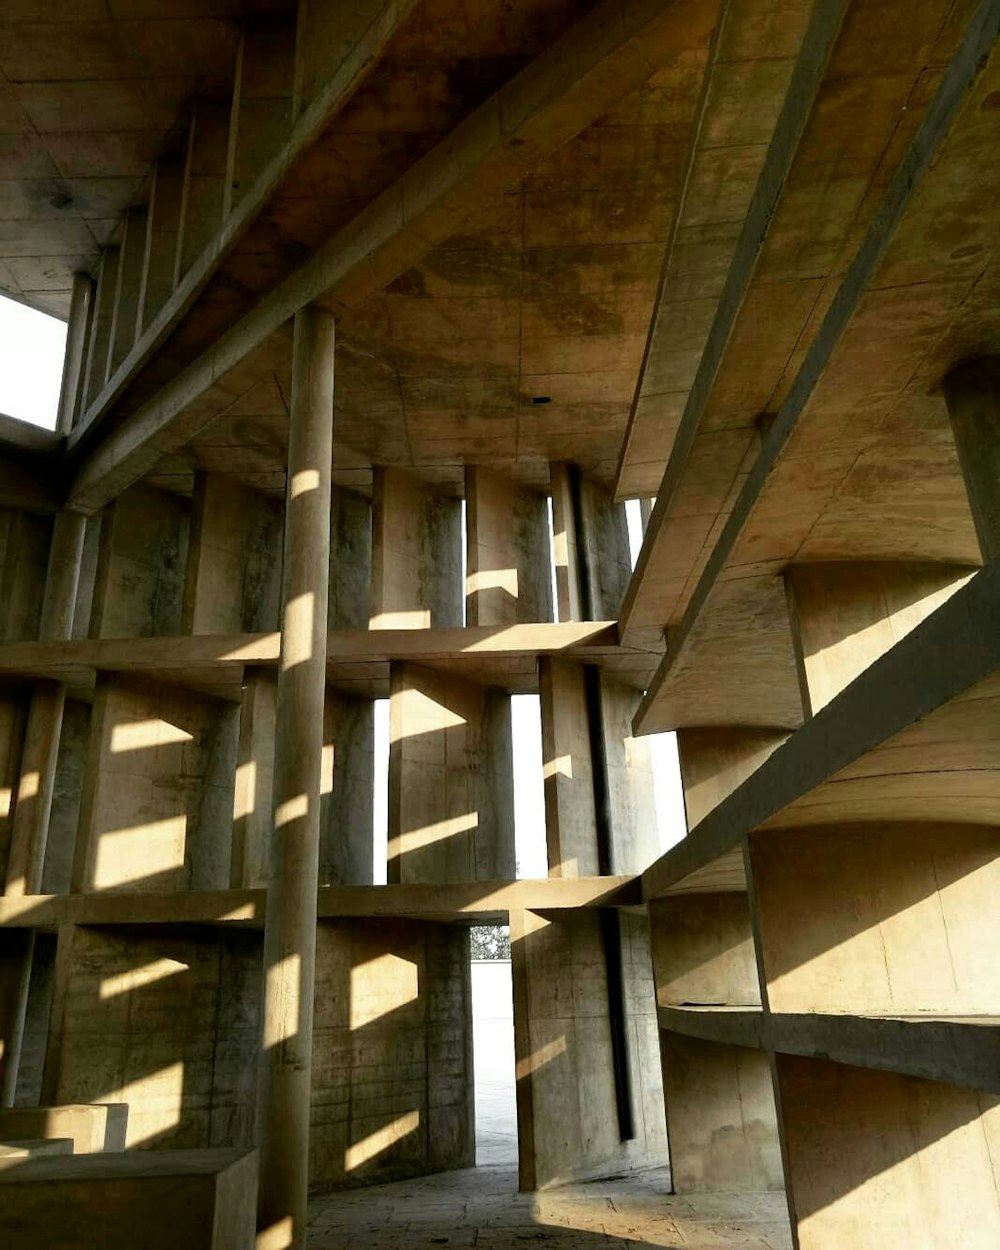 Une structure en bois très haute avec beaucoup de fenêtres